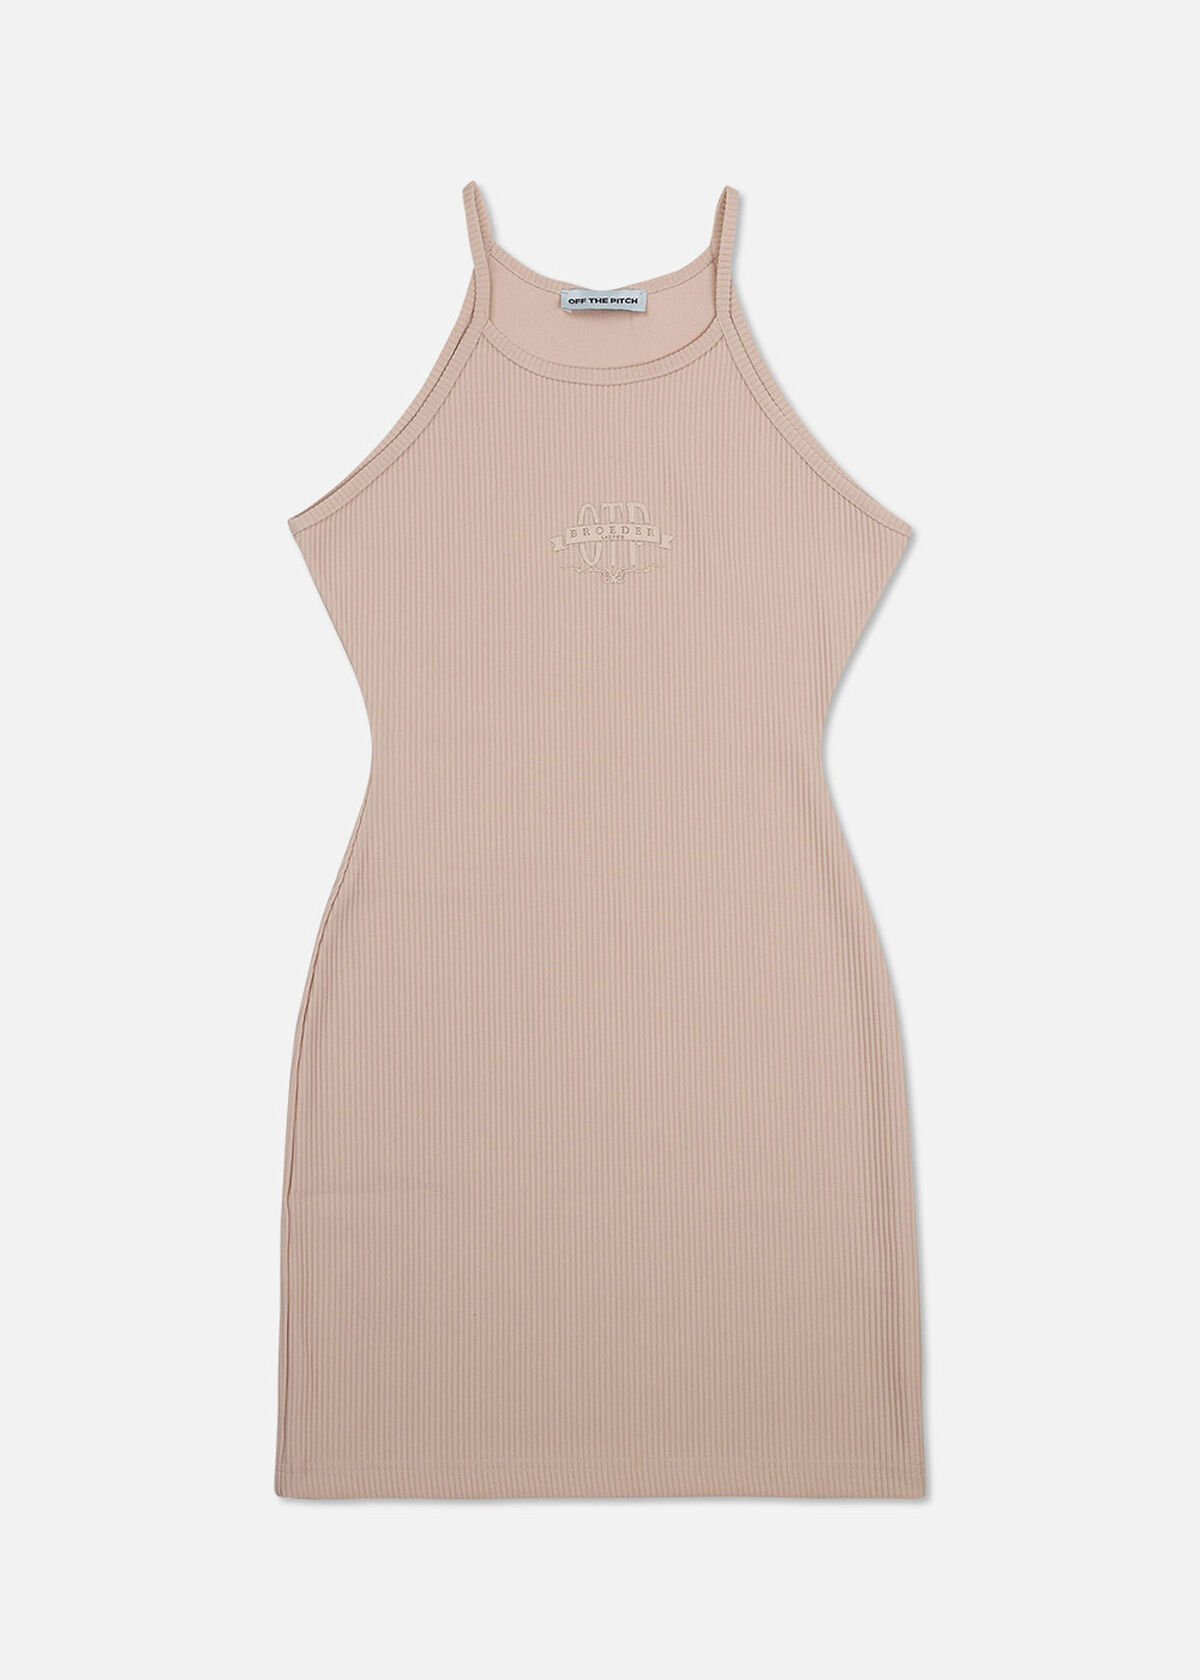 OTP BL Shoulderless Dress, Sand, hi-res